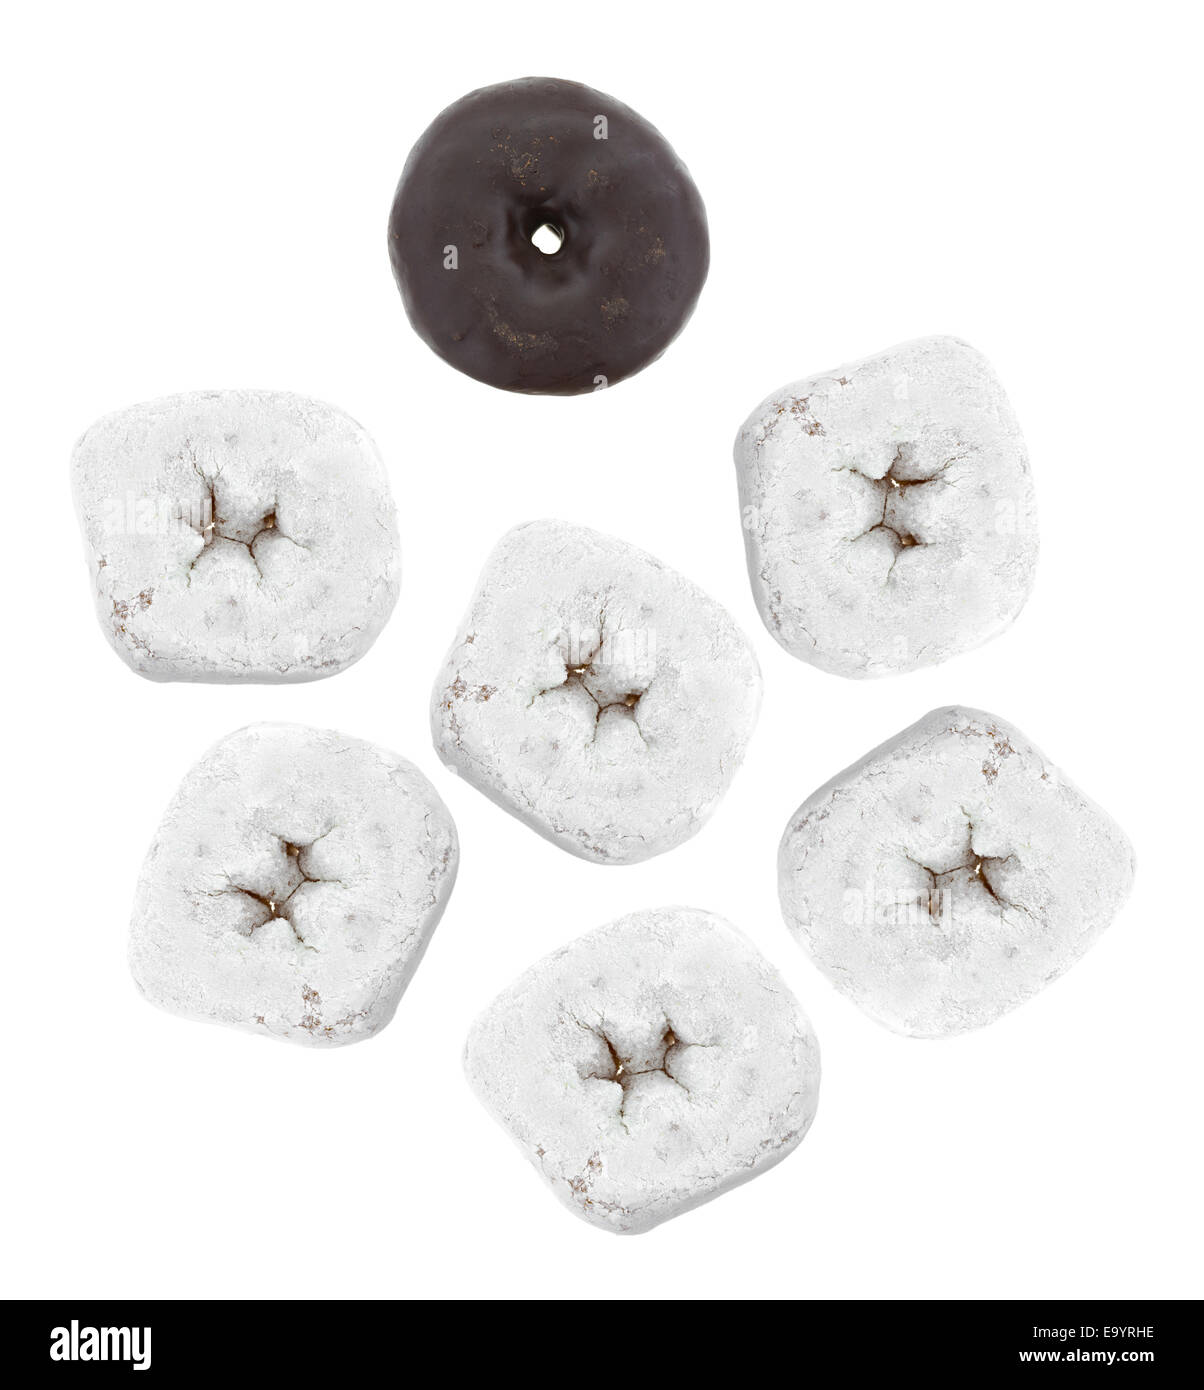 Un groupe de sucre blanc en poudre donuts avec un seul beignet glacé au chocolat sur un fond blanc. Banque D'Images